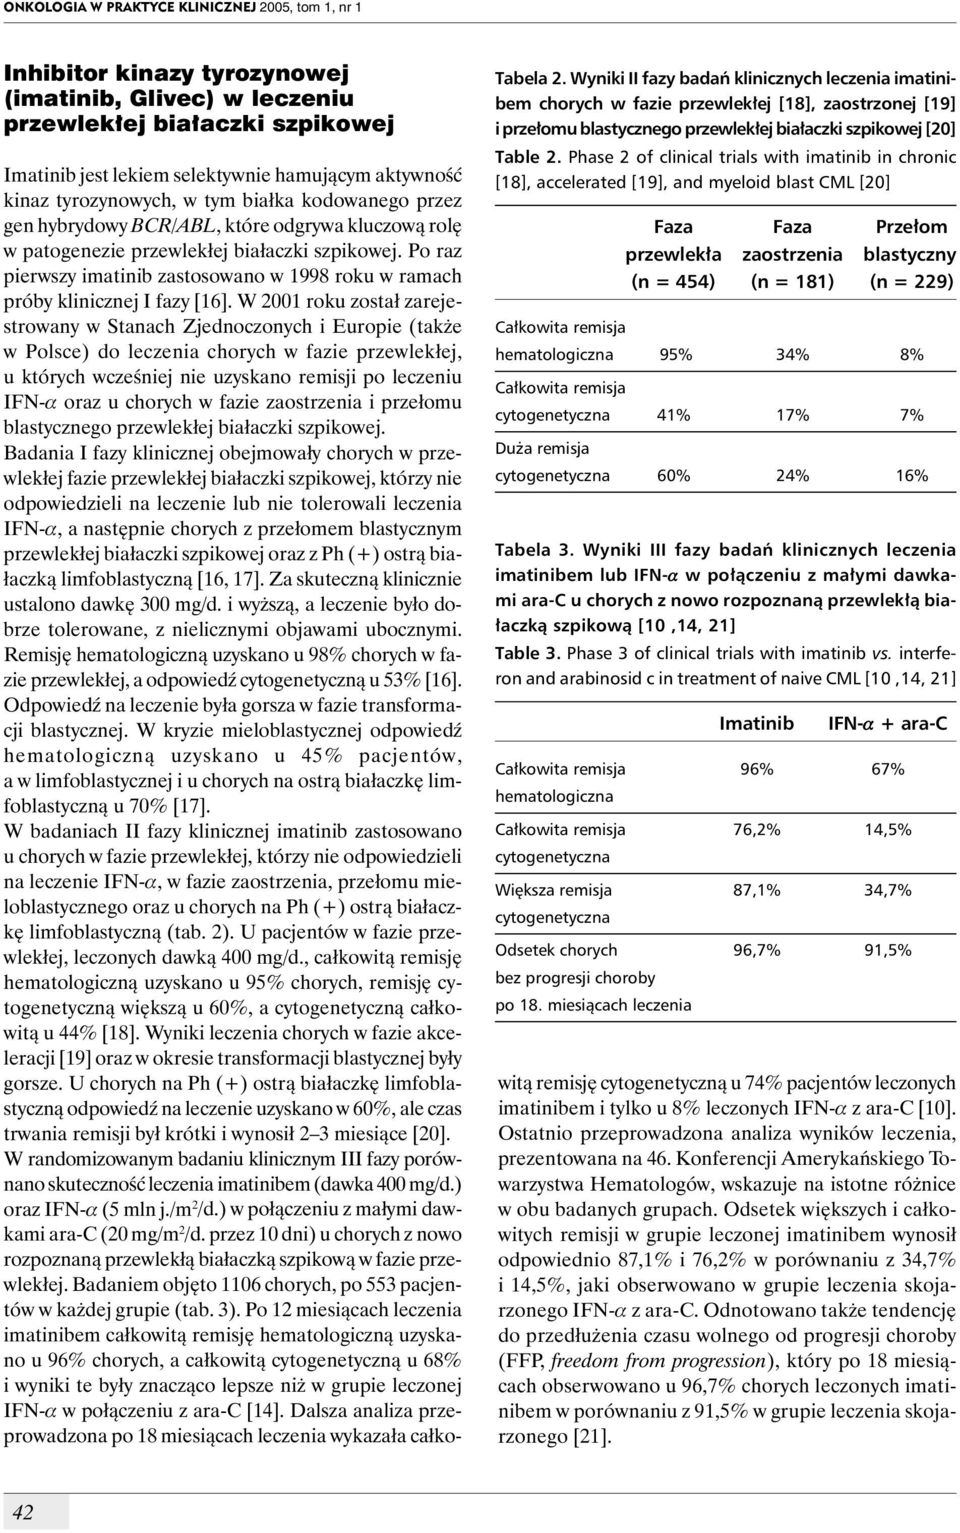 Phase 2 of clinical trials with imatinib in chronic [18], accelerated [19], and myeloid blast CML [20] Faza Faza Przełom przewlekła zaostrzenia blastyczny (n = 454) (n = 181) (n = 229) Całkowita